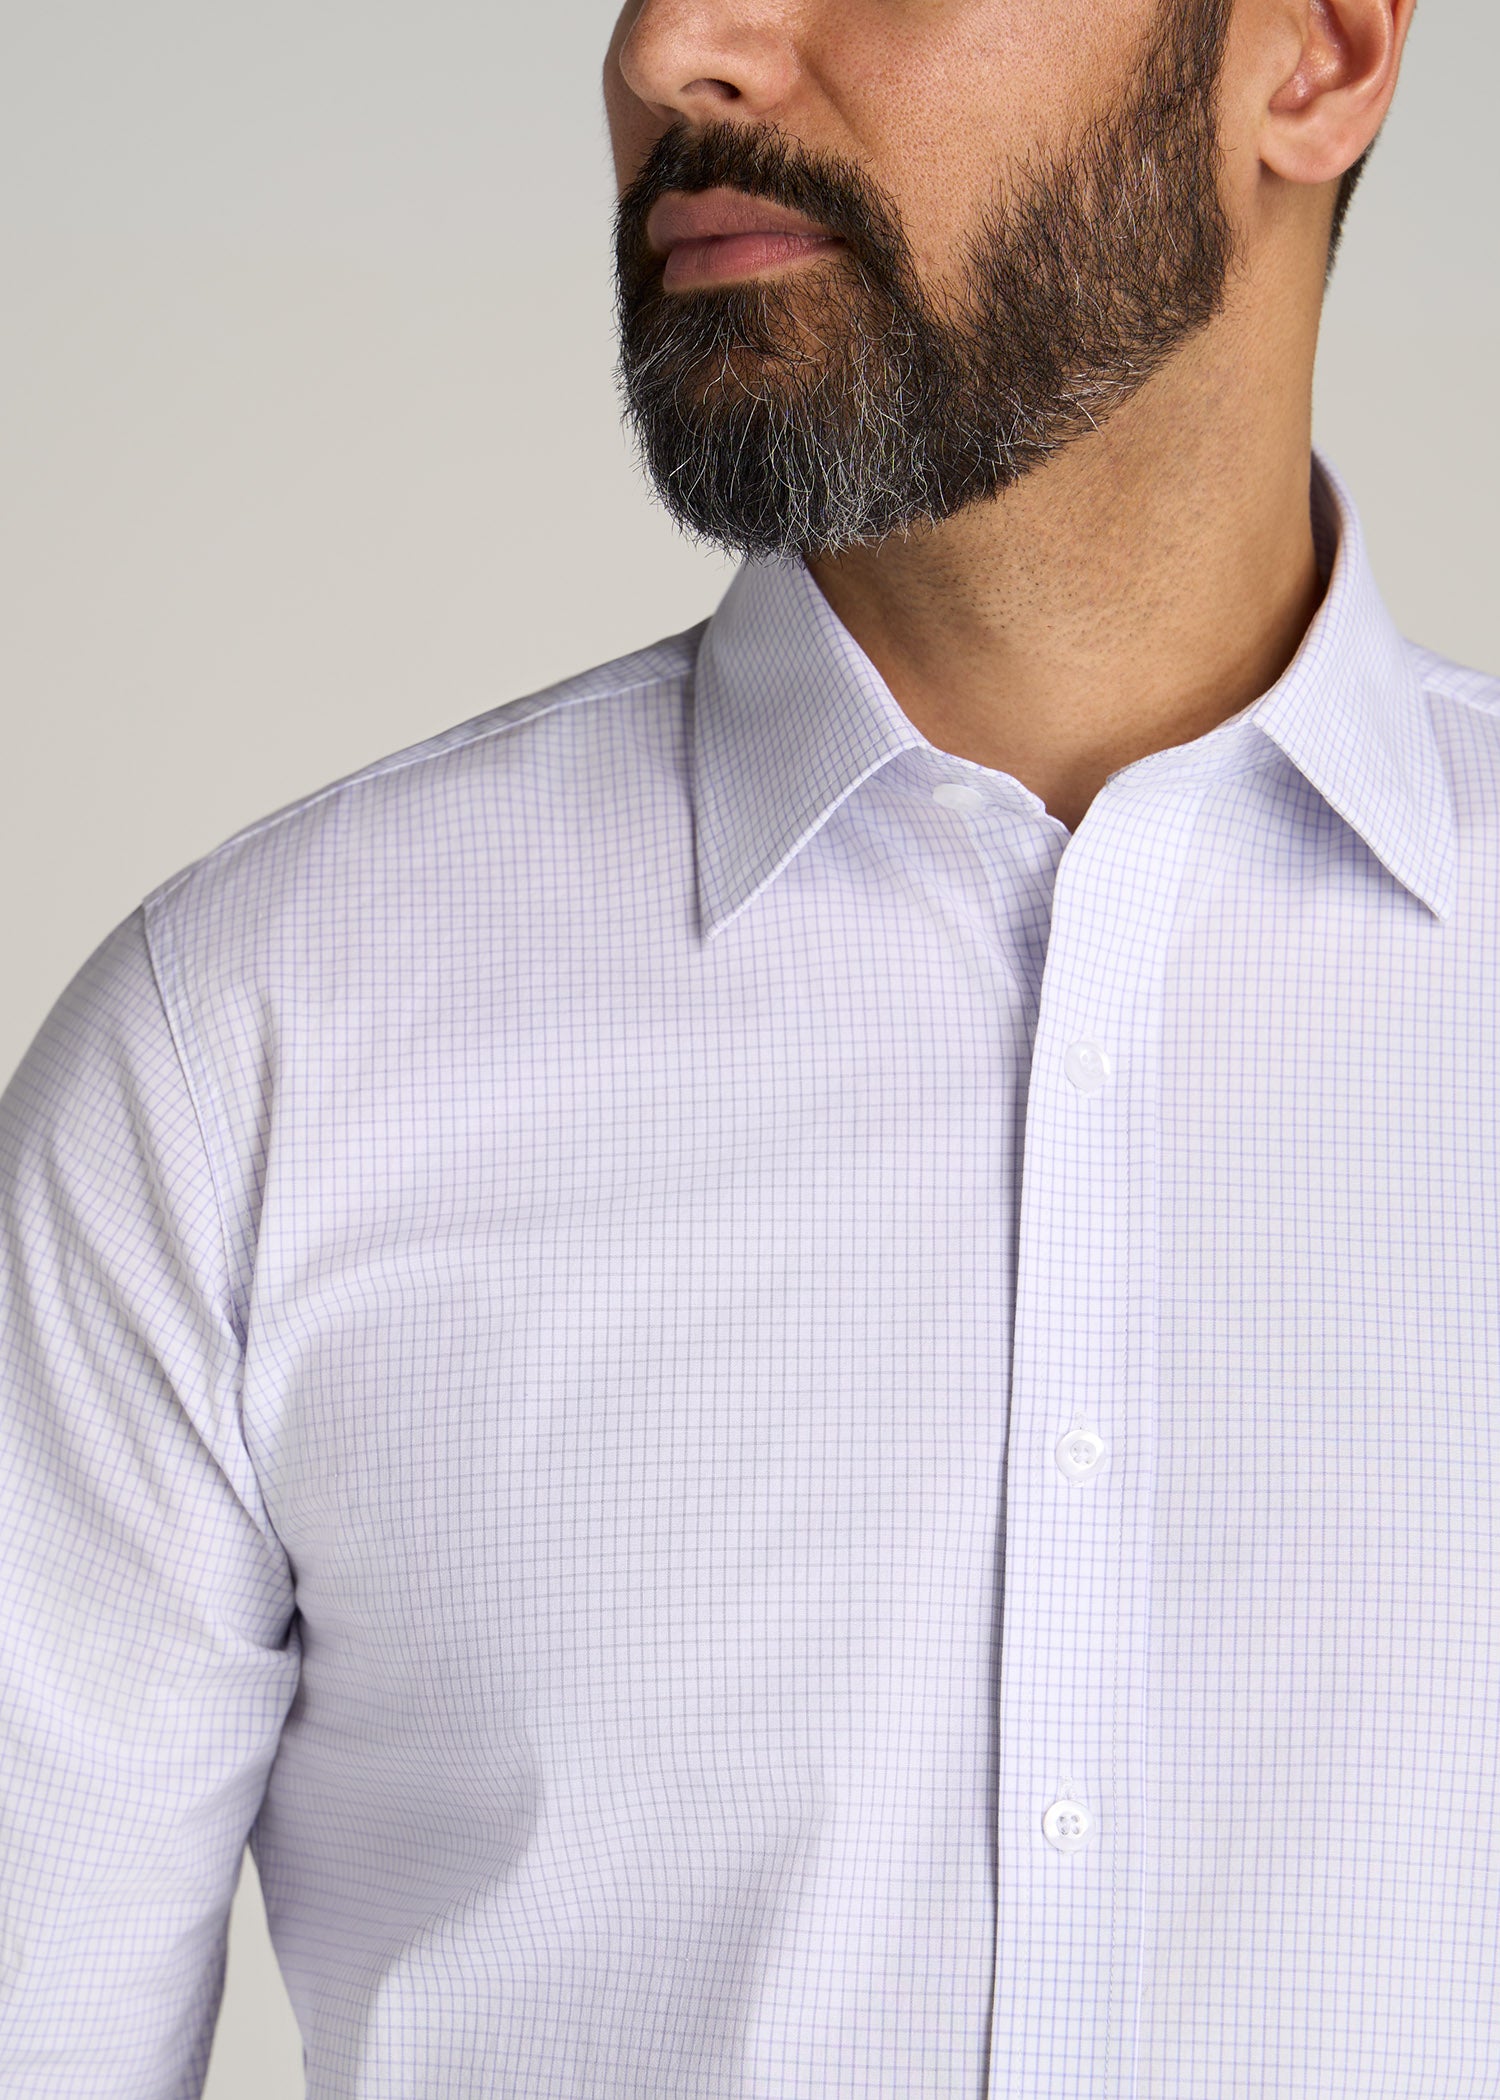 Oskar Button-Up Shirt for Tall Men in Iris Mini Check